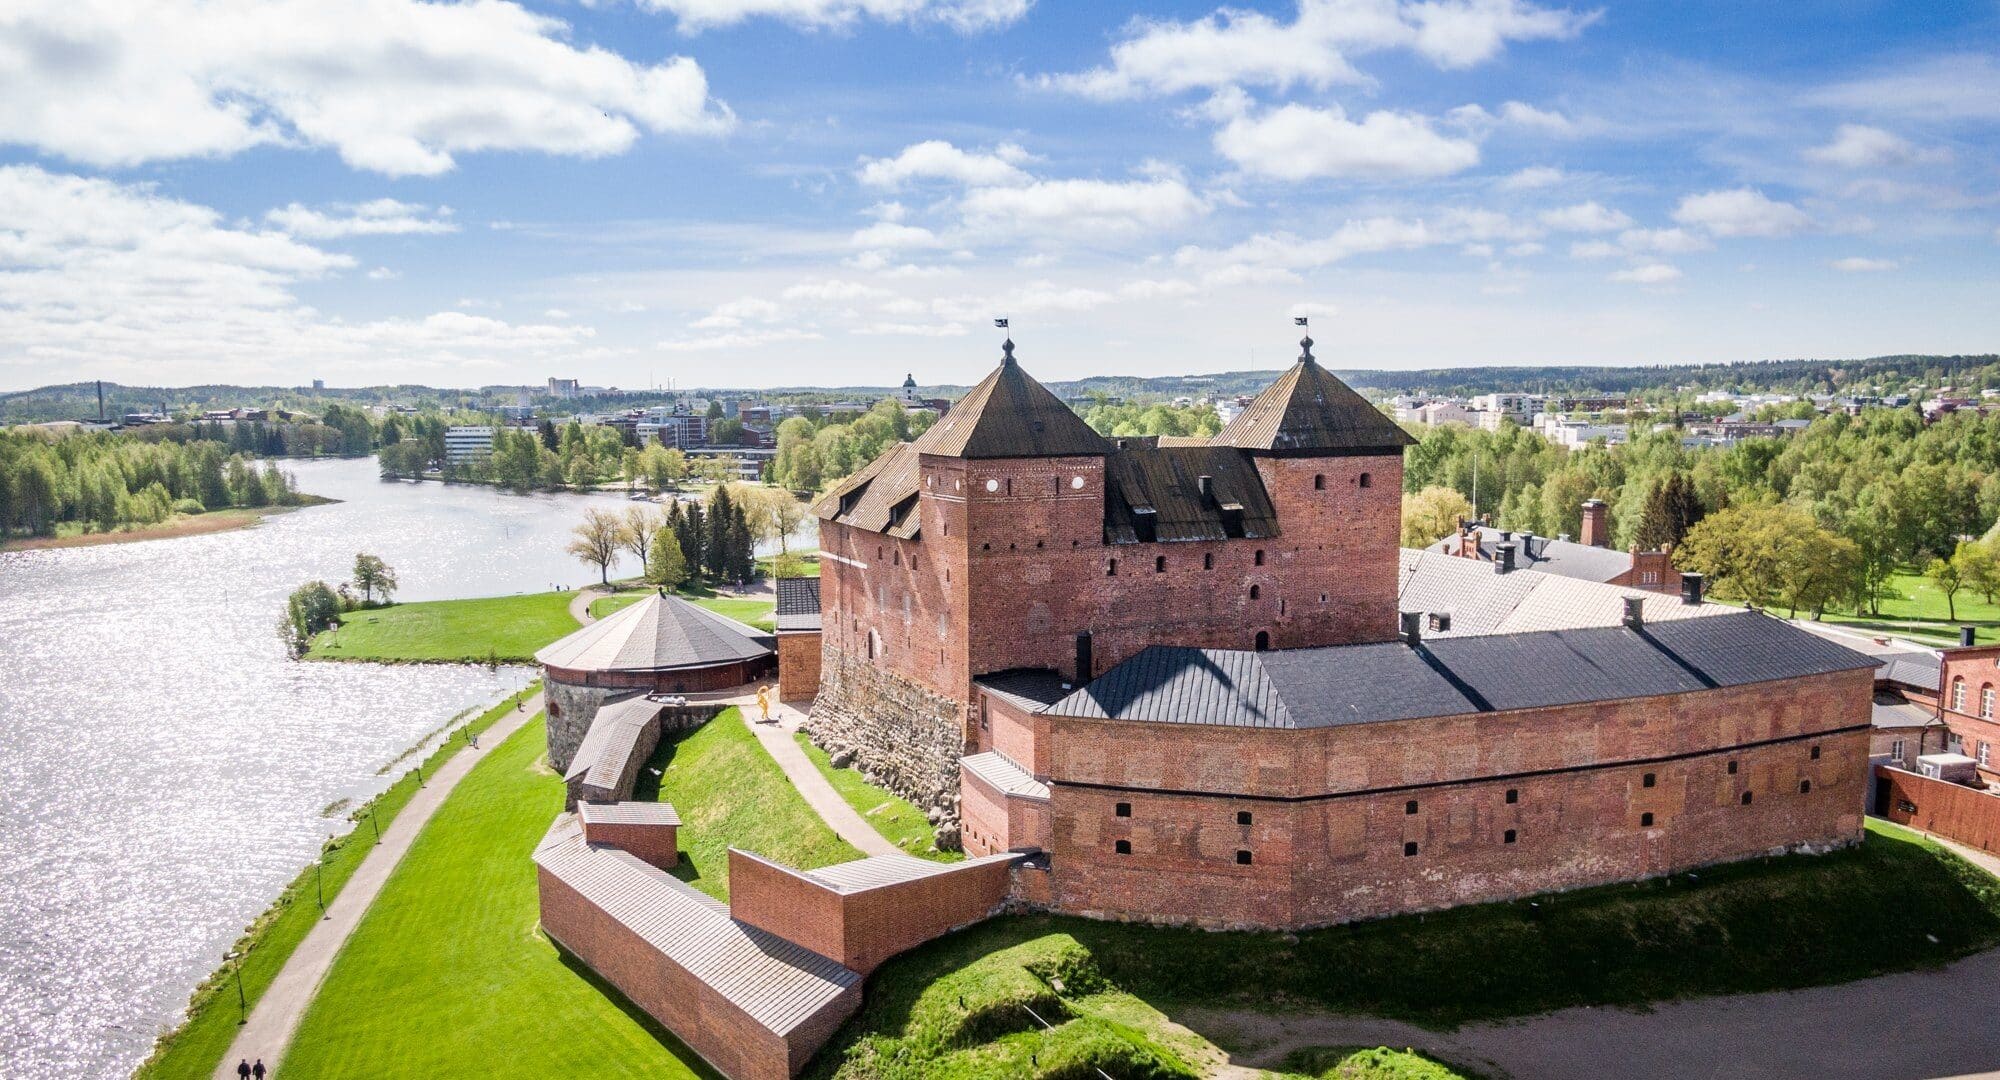 Häme Castle Hämeenlinna city